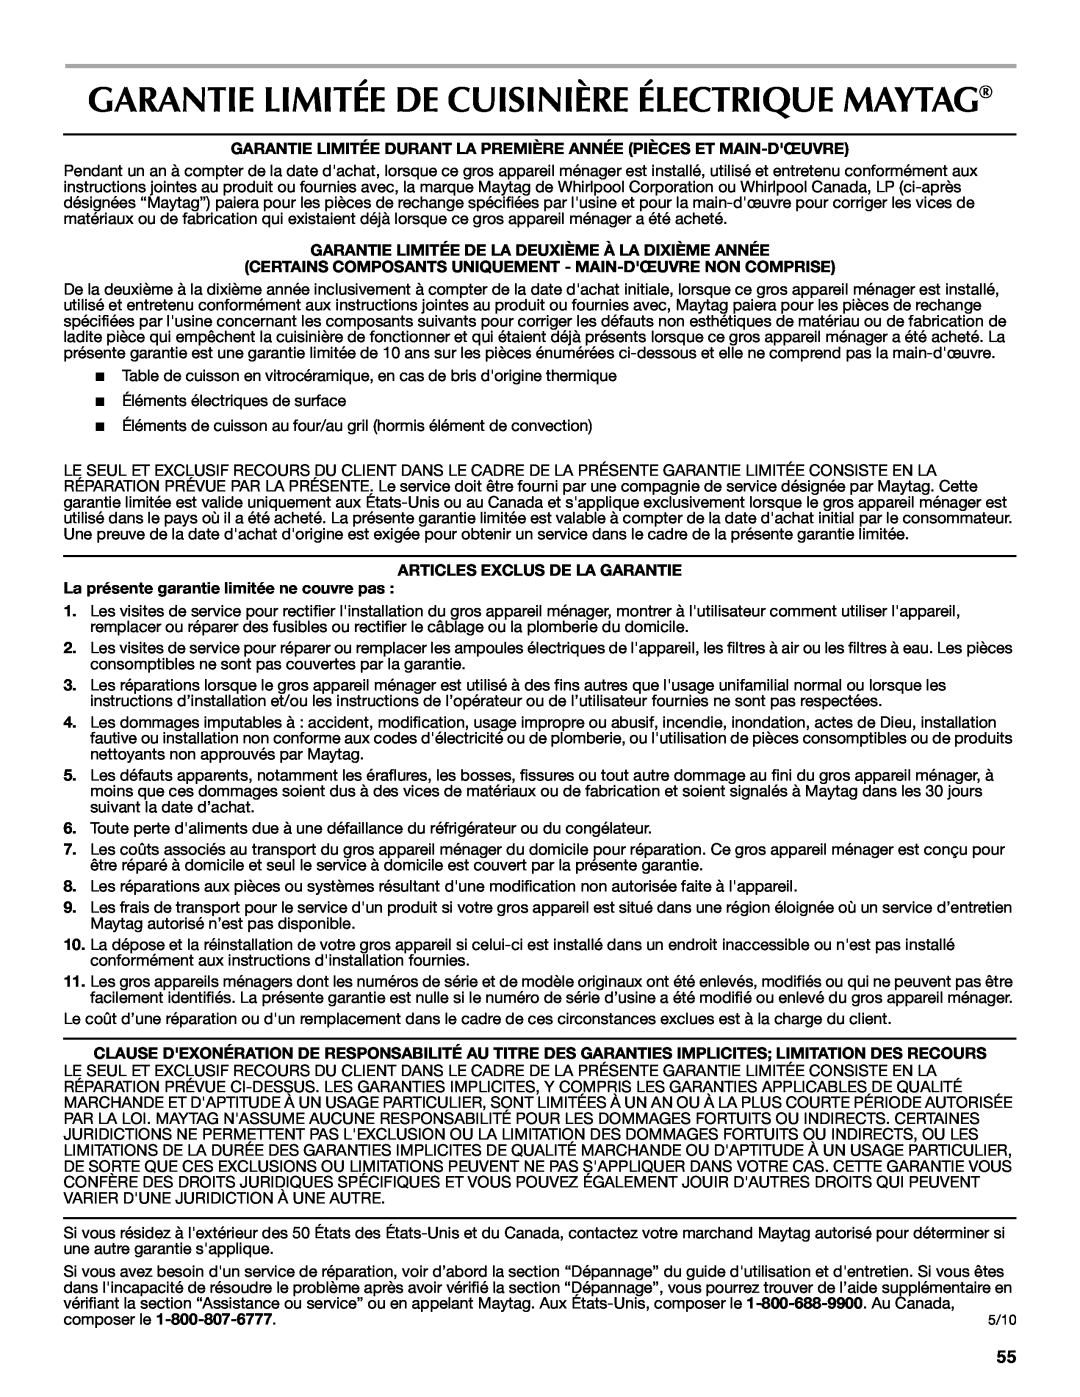 Maytag W10345638A manual Garantie Limitée De Cuisinière Électrique Maytag, Articles Exclus De La Garantie, composer le 